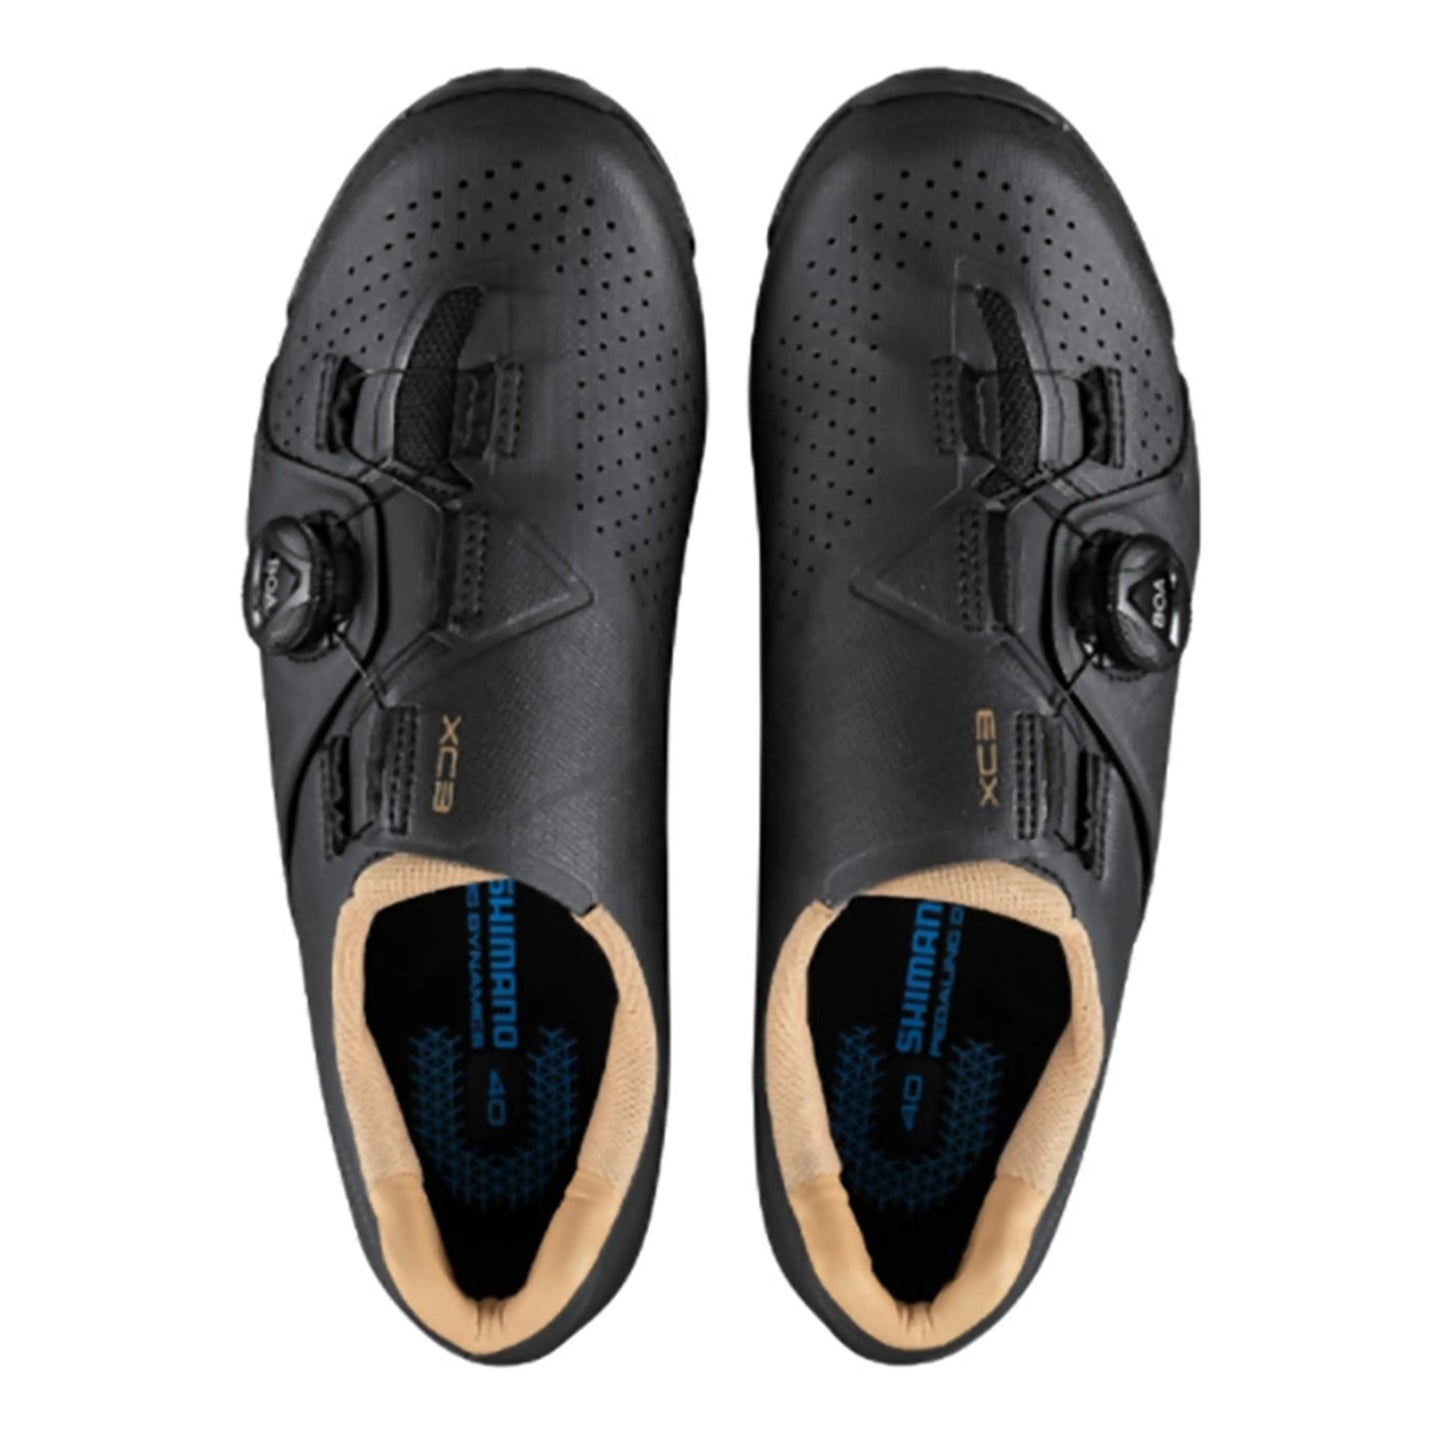 Chaussures VTT Shimano XC3 Femme Noir